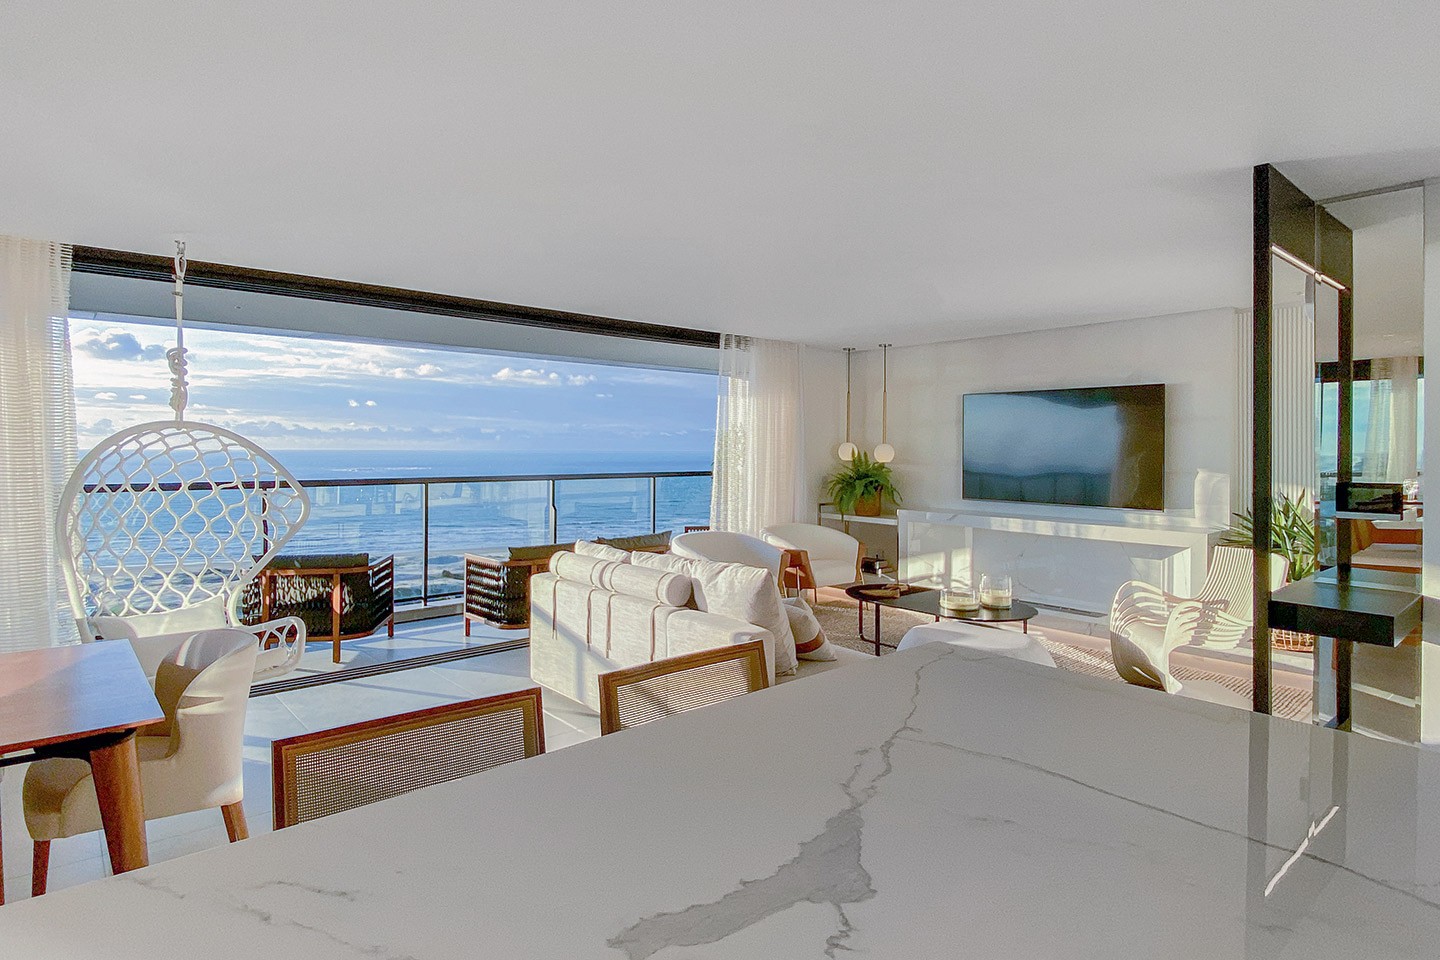 Apartamento de 220 m² tem clima praiano e vista privilegiada (Foto: Harleyson Almeida/divulgação)